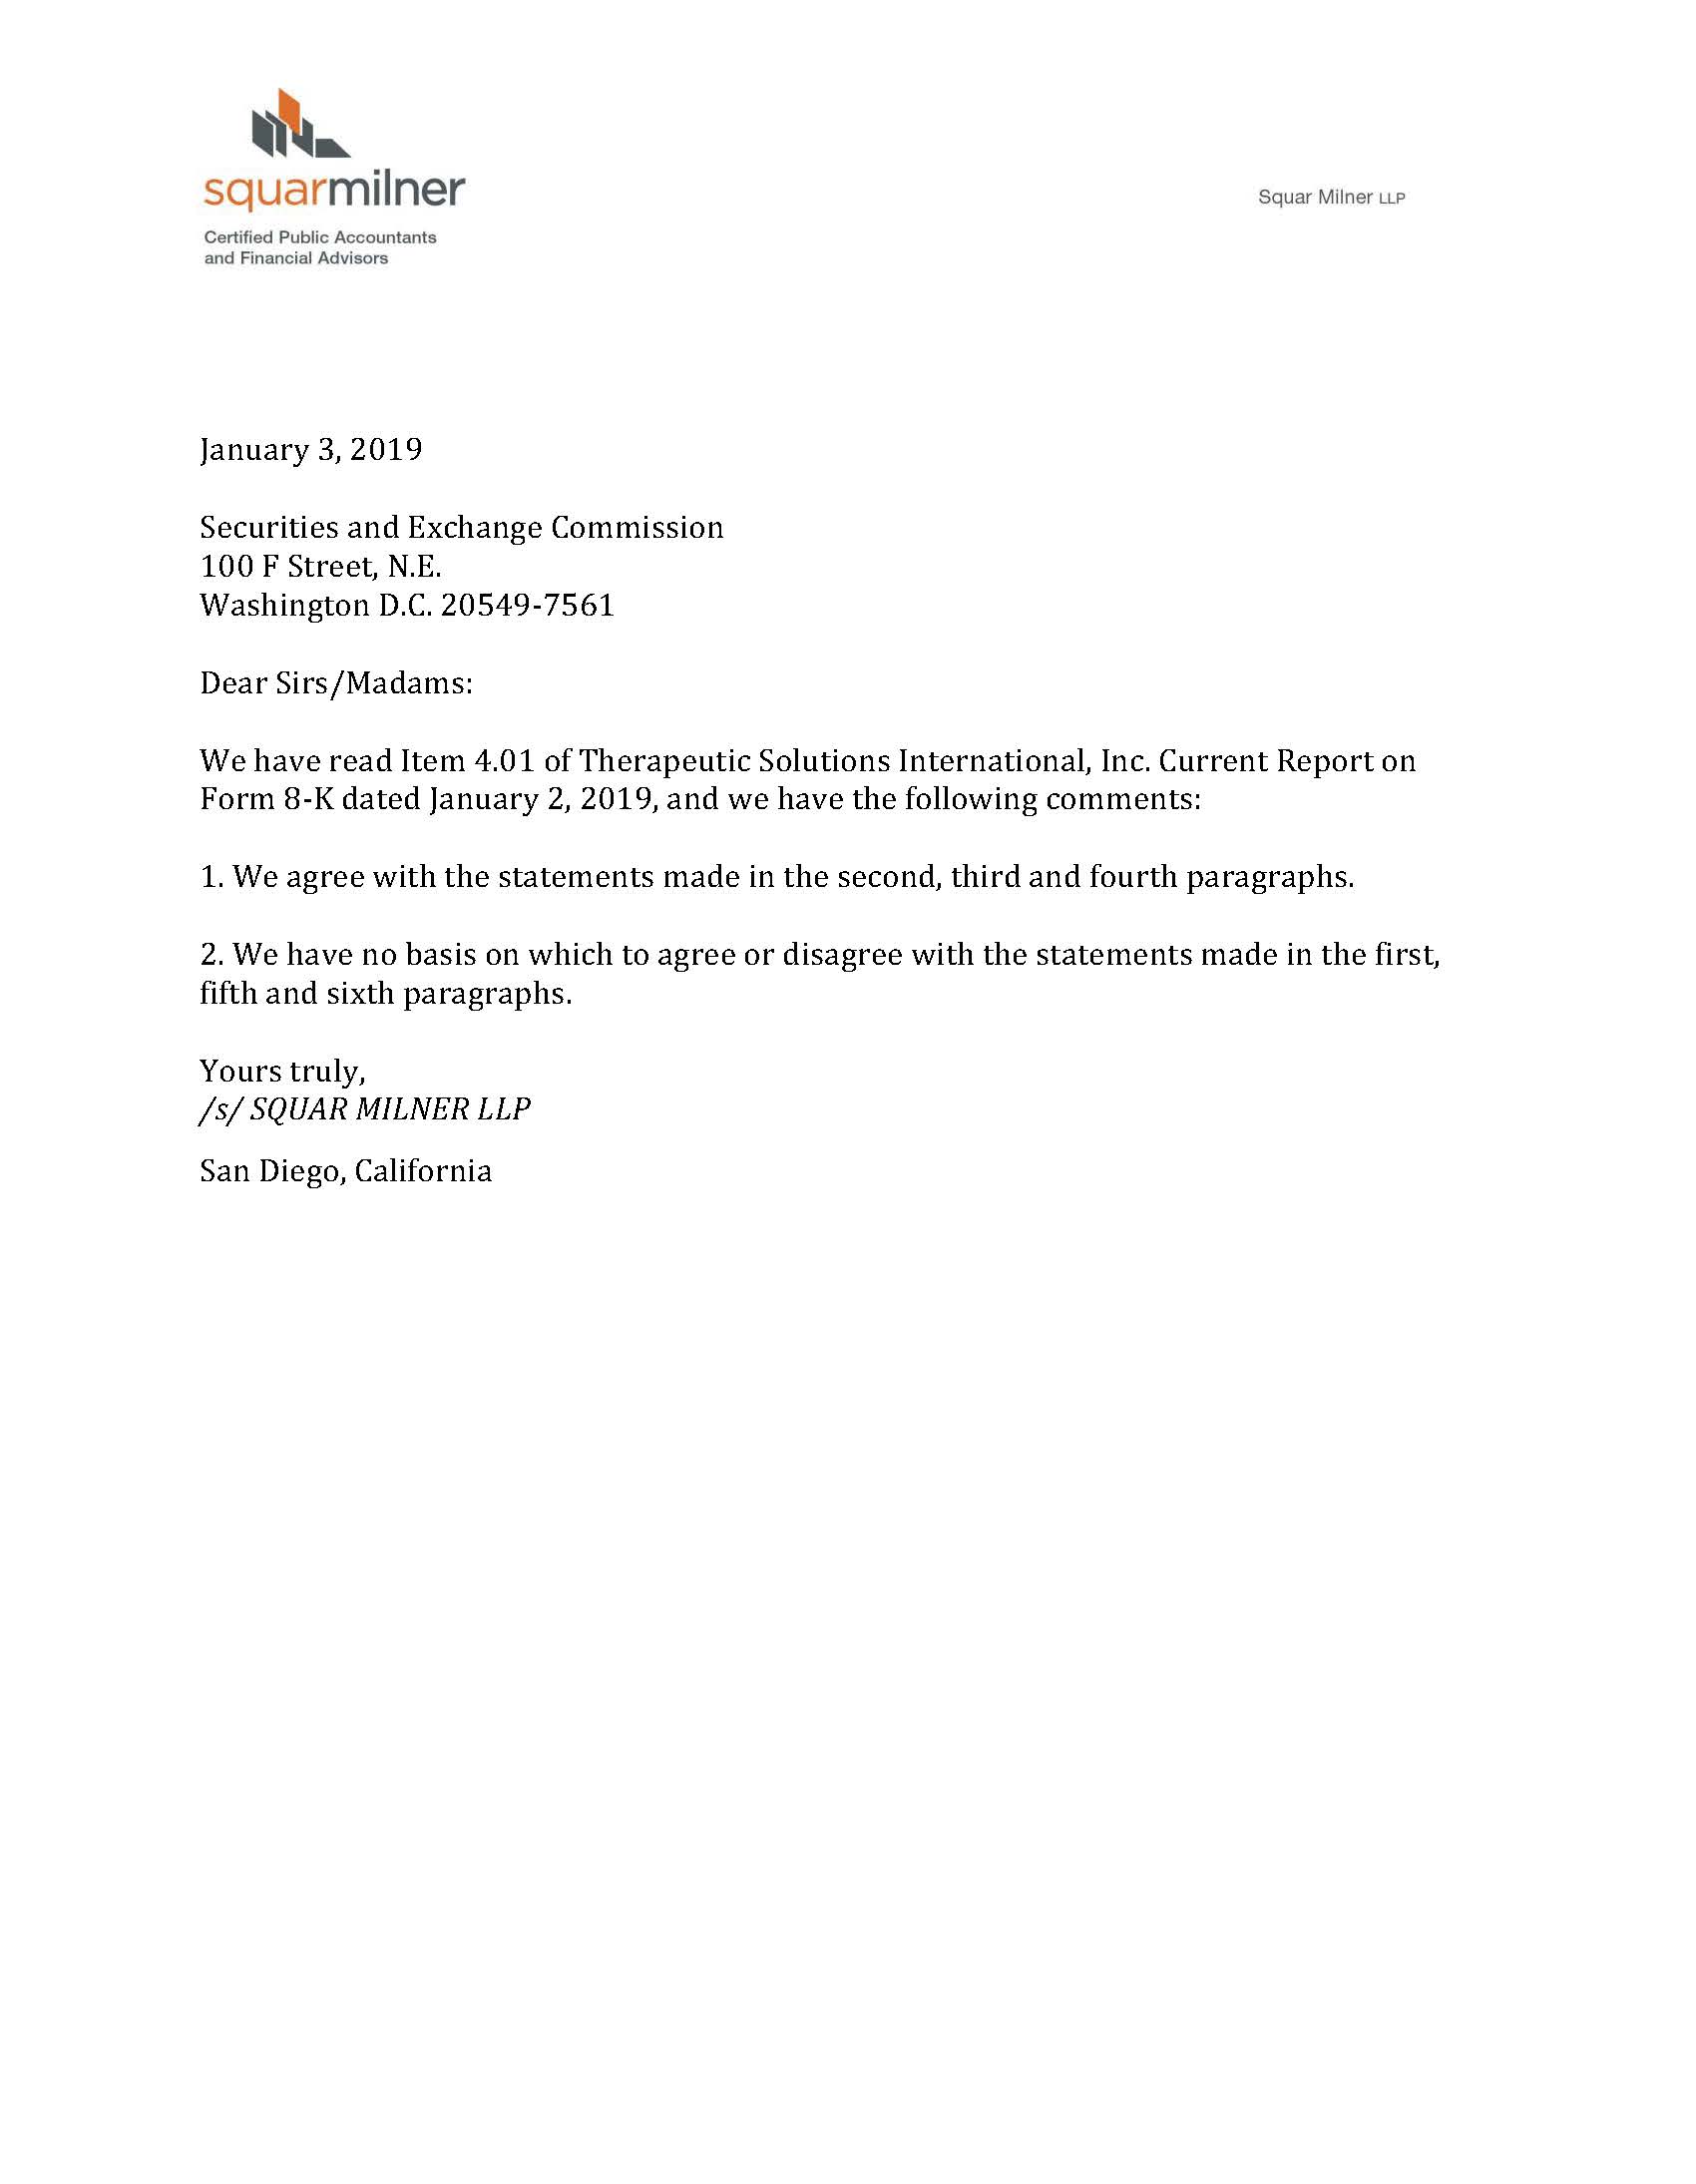 TSI SEC letter - Squar Milner 1-3-2019.jpg